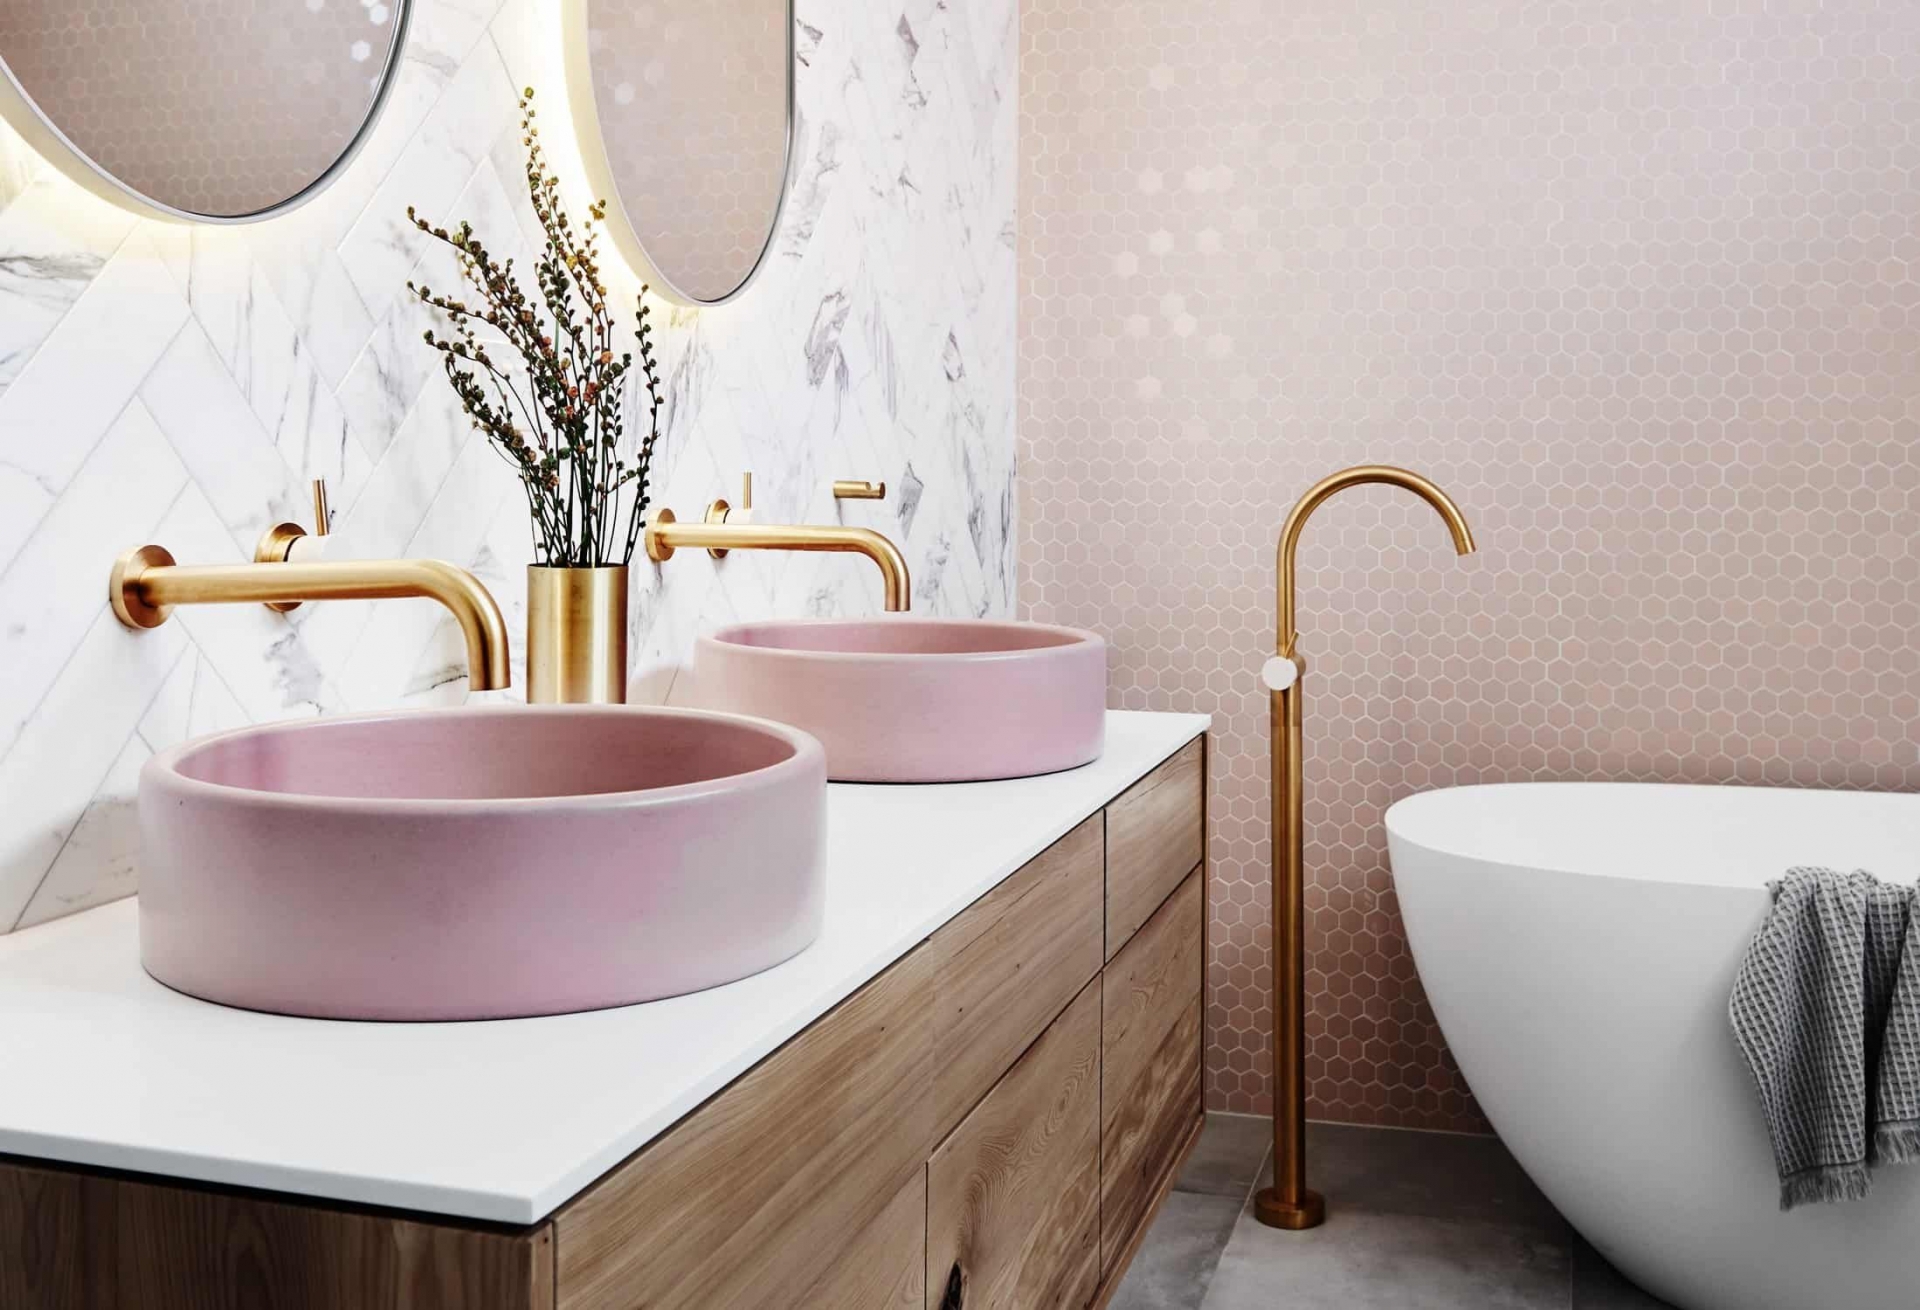 Phòng tắm sang trọng tuyệt đối với bức tường ốp đá họa tiết xương cá và gạch penny hình lục giác sắc hồng điệu đà. Vòi nước cạnh bồn tắm, trên bồn rửa tay hay lọ hoa màu vàng đồng là điểm nhấn hoàn thiện nét quyến rũ cho căn phòng.